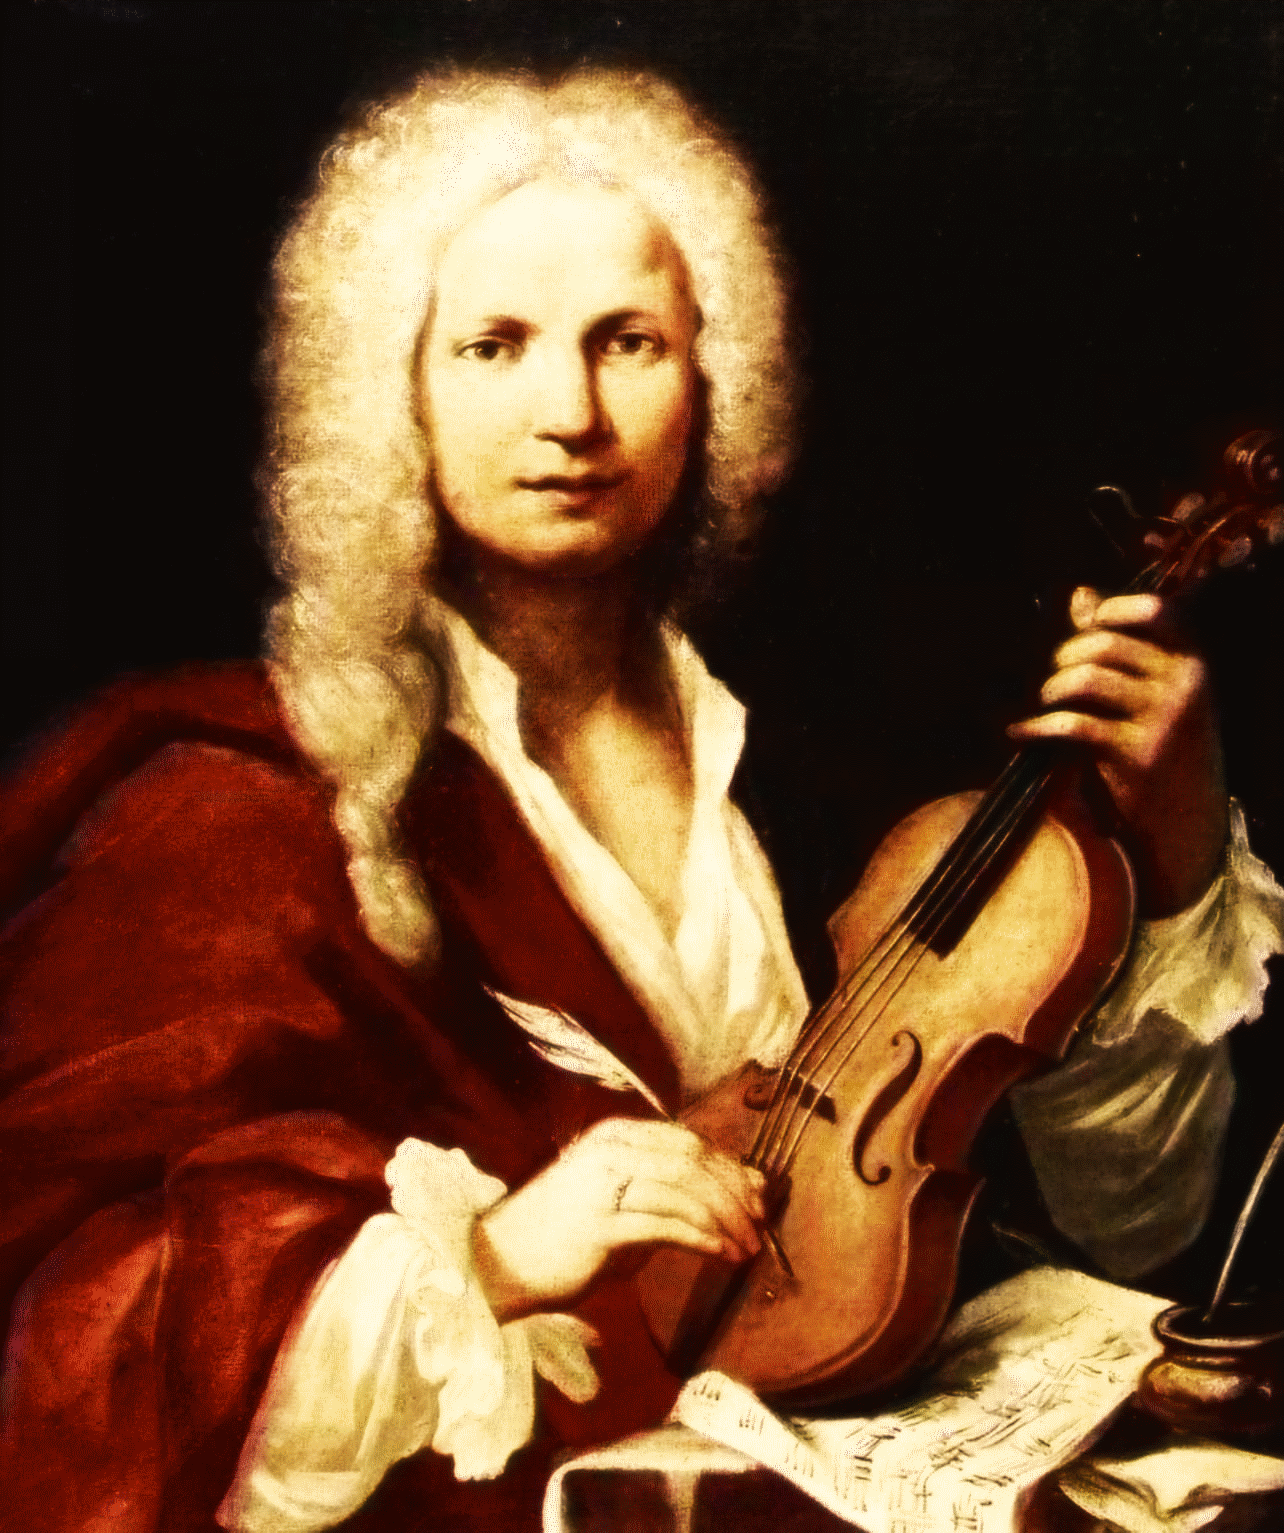 Antonio Vivaldi, Italian composer